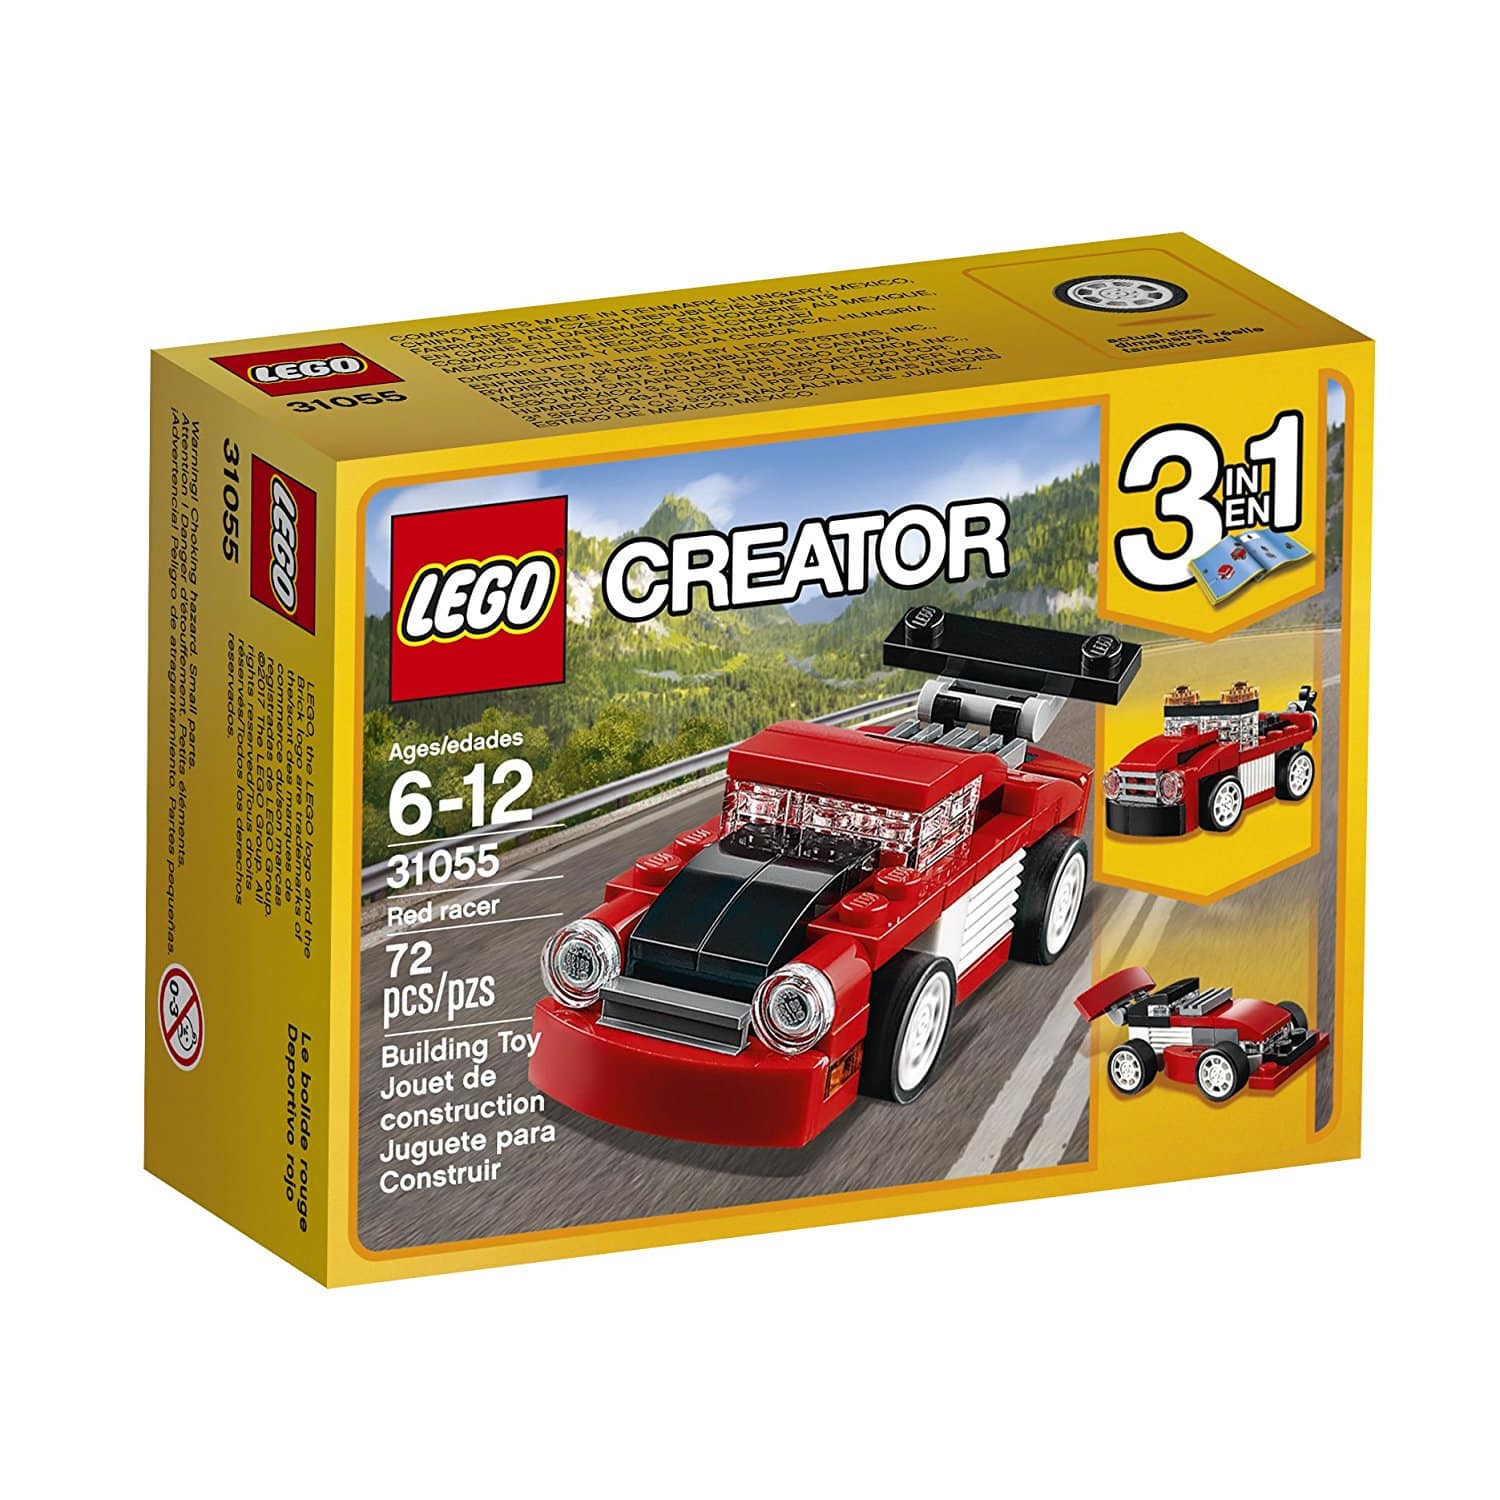 DEAL ALERT: LEGO Creator Red Racer 31055 Building Kit – 52% off!